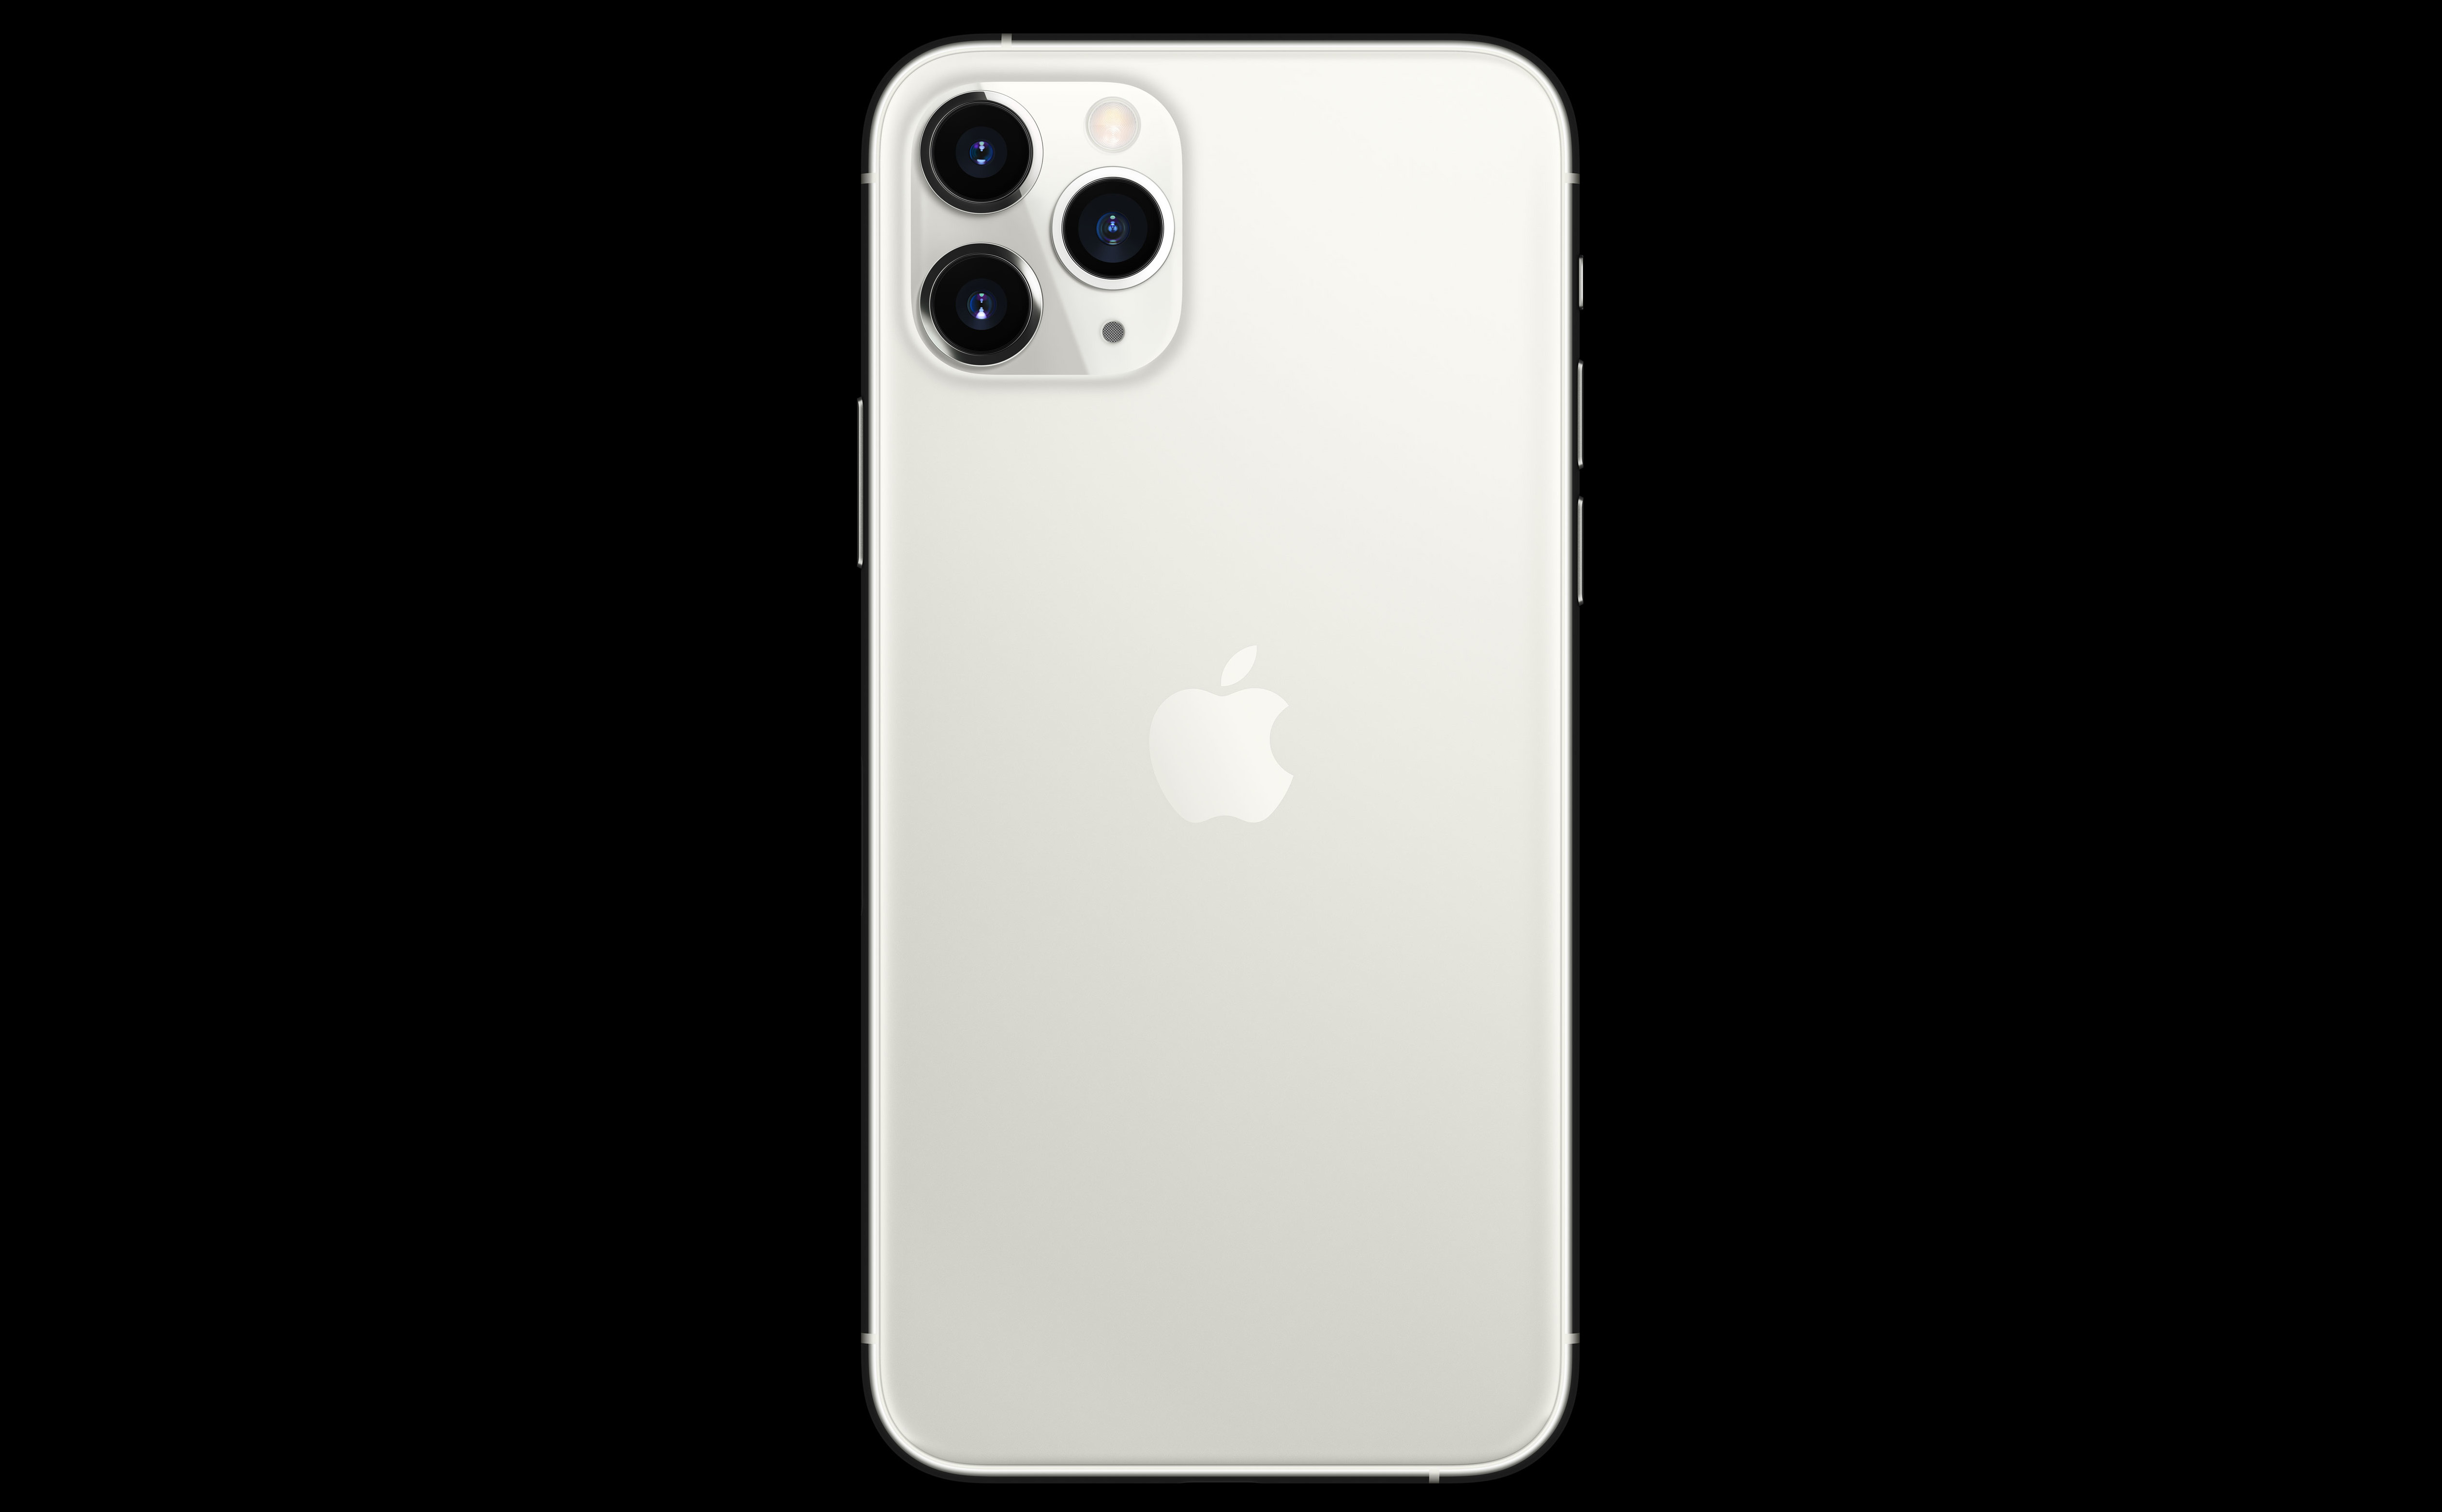 iPhone 11 Pro/Pro Max: Tận hưởng những tính năng tốt nhất của iPhone 11 Pro và Pro Max với một thiết bị độc đáo và đầy ấn tượng. Camera kép chất lượng cao, khả năng zoom vượt trội, màn hình OLED siêu rõ nét, độ bền và hiệu năng tuyệt vời - tất cả đều có trong iPhone 11 Pro/Pro Max. Xem ảnh liên quan ngay để cảm nhận sự hoàn hảo của sản phẩm này.